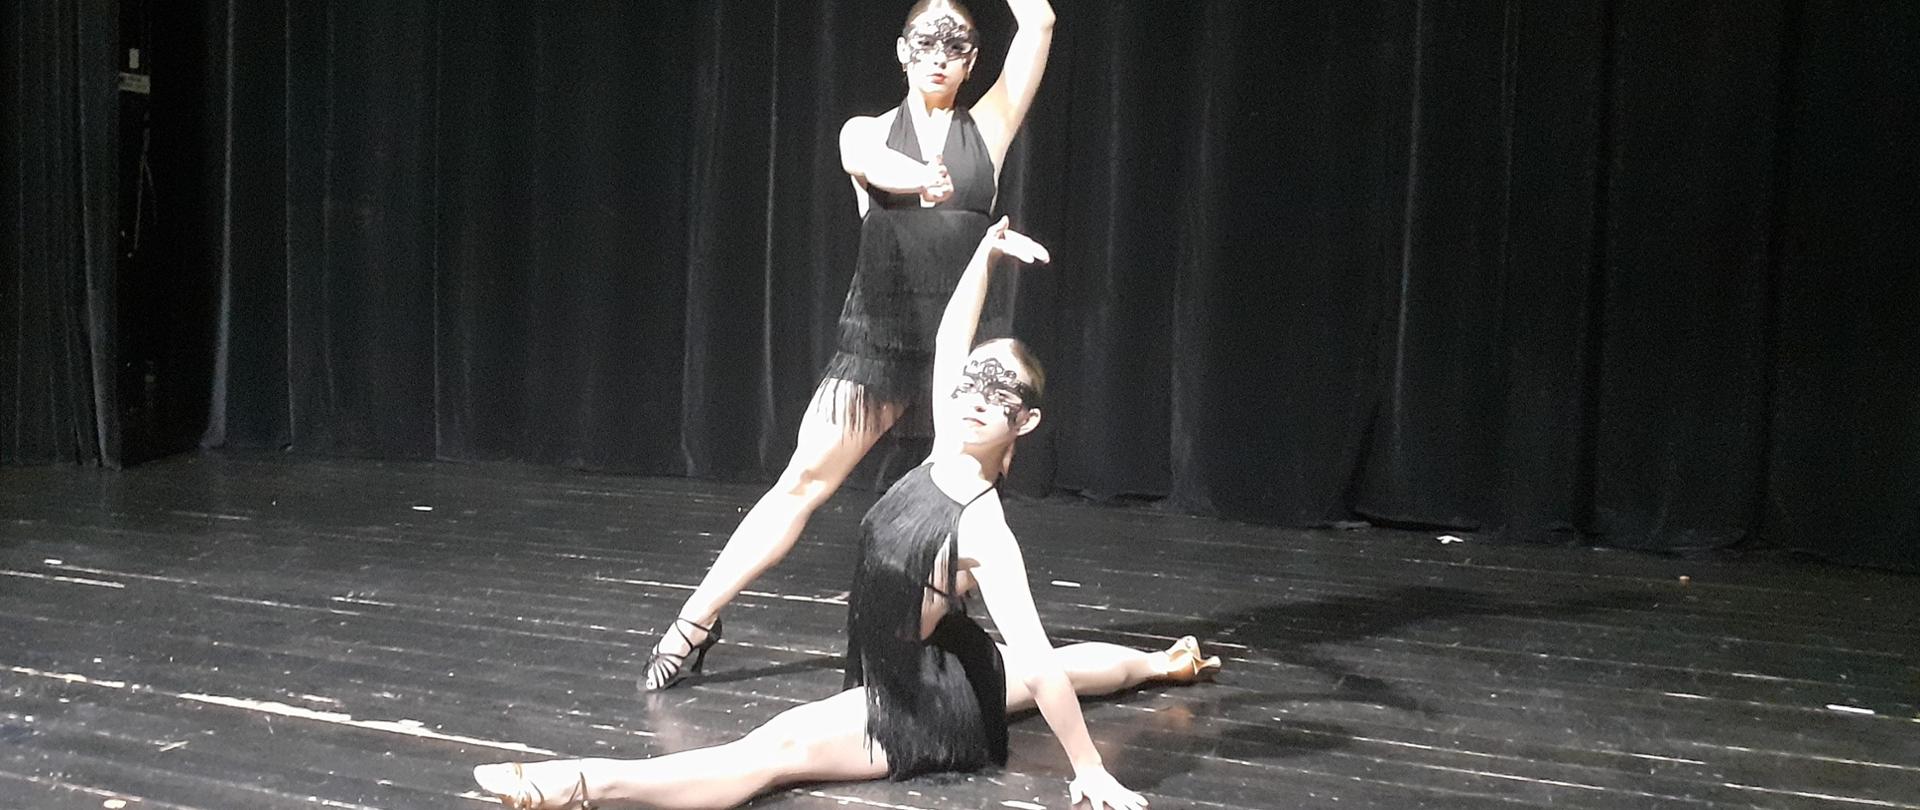 Na zdjęciu dwie uczennice tańczące na scenie teatru. Jedna uczennica robi szpagat, druga za nią tańczy.